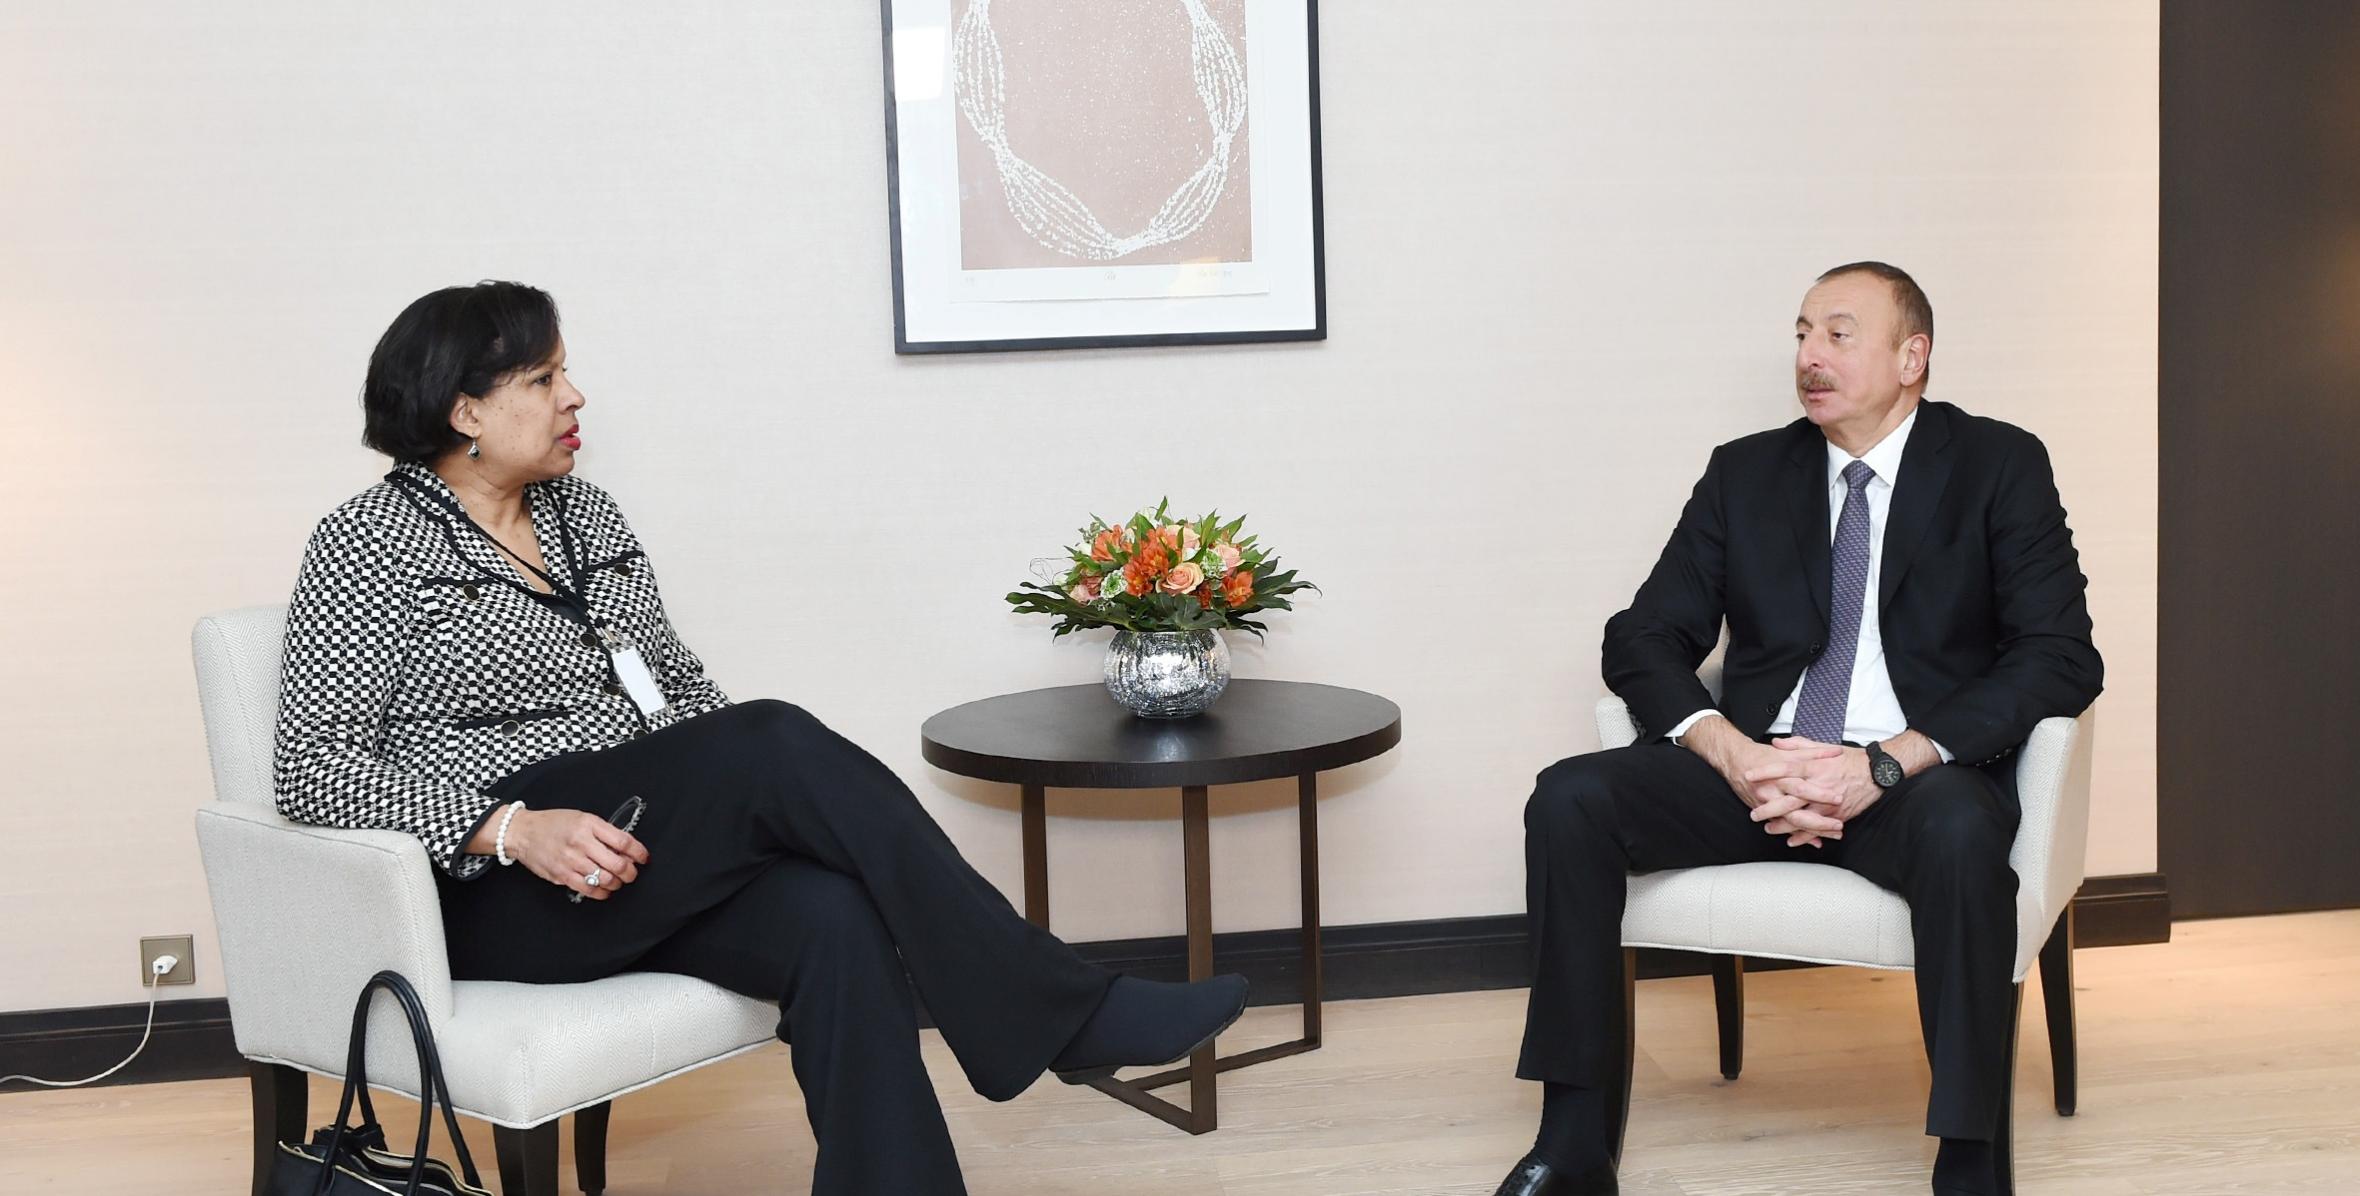 İlham Əliyev “Microsoft” şirkətinin ümumdünya dövlət qurumları ilə əlaqələr üzrə korporativ vitse-prezidenti ilə görüşüb